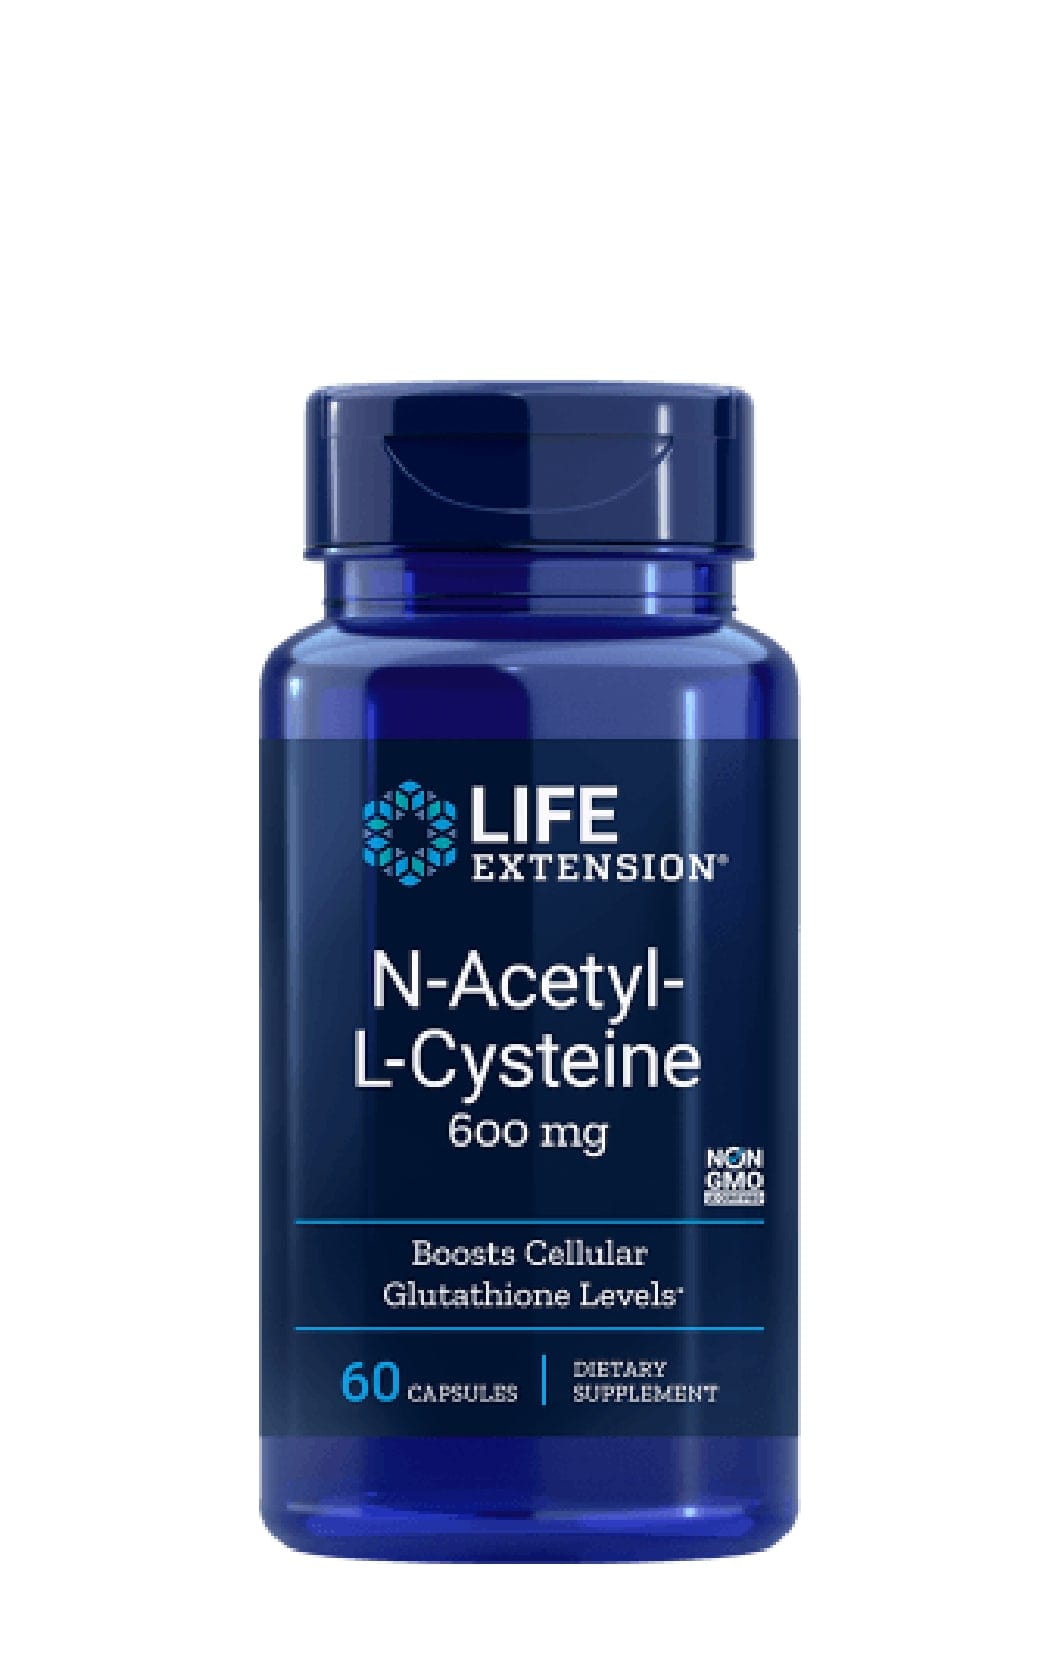 Life Extension N-Acetyl-L-Cysteine bei LiveHelfi kaufen